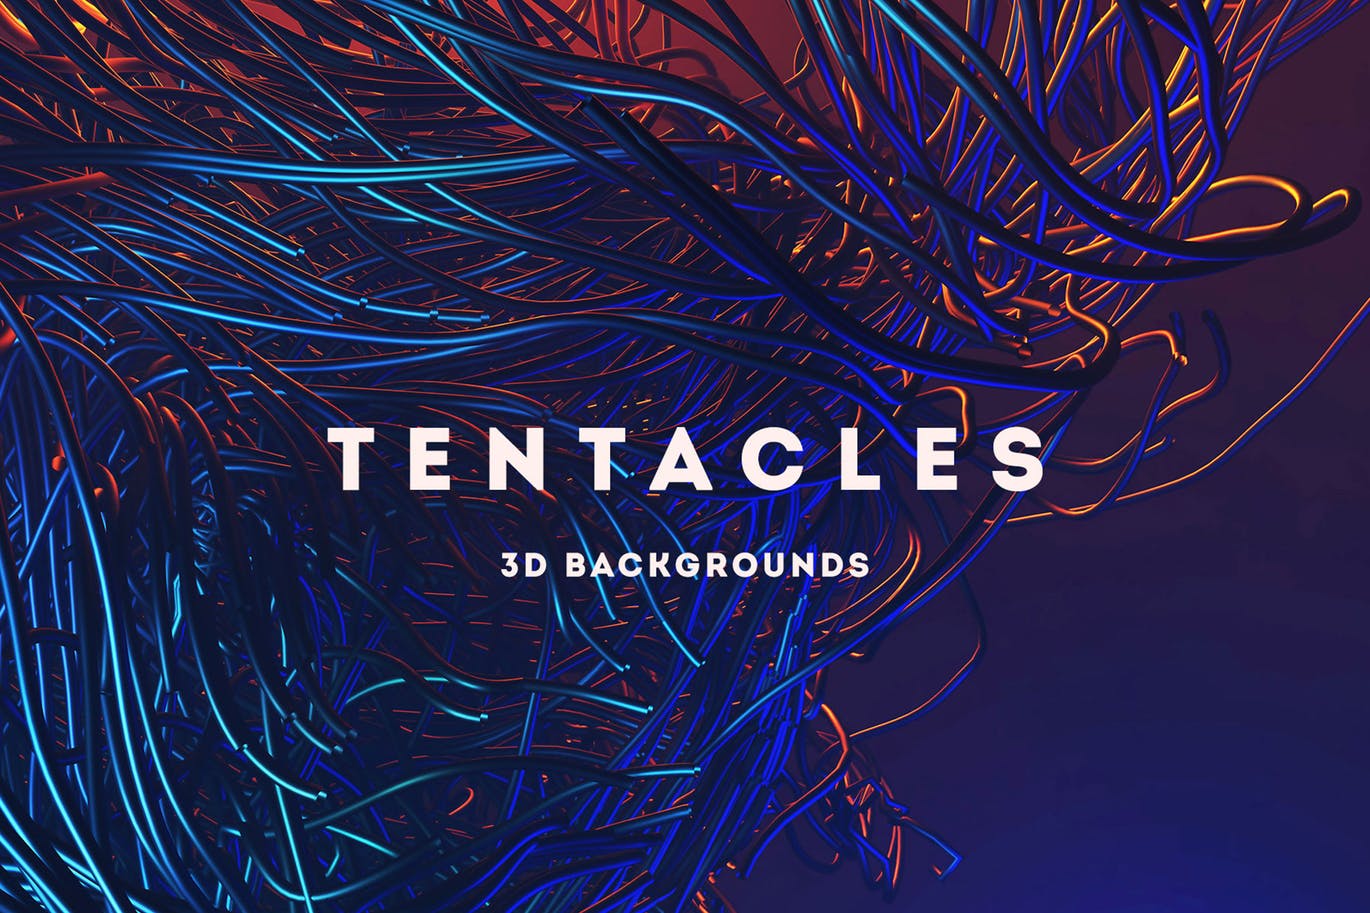 15个超未来科技风格3D高清背景图素材 Tentacles – 15 Futuristic 3D Backgrounds插图